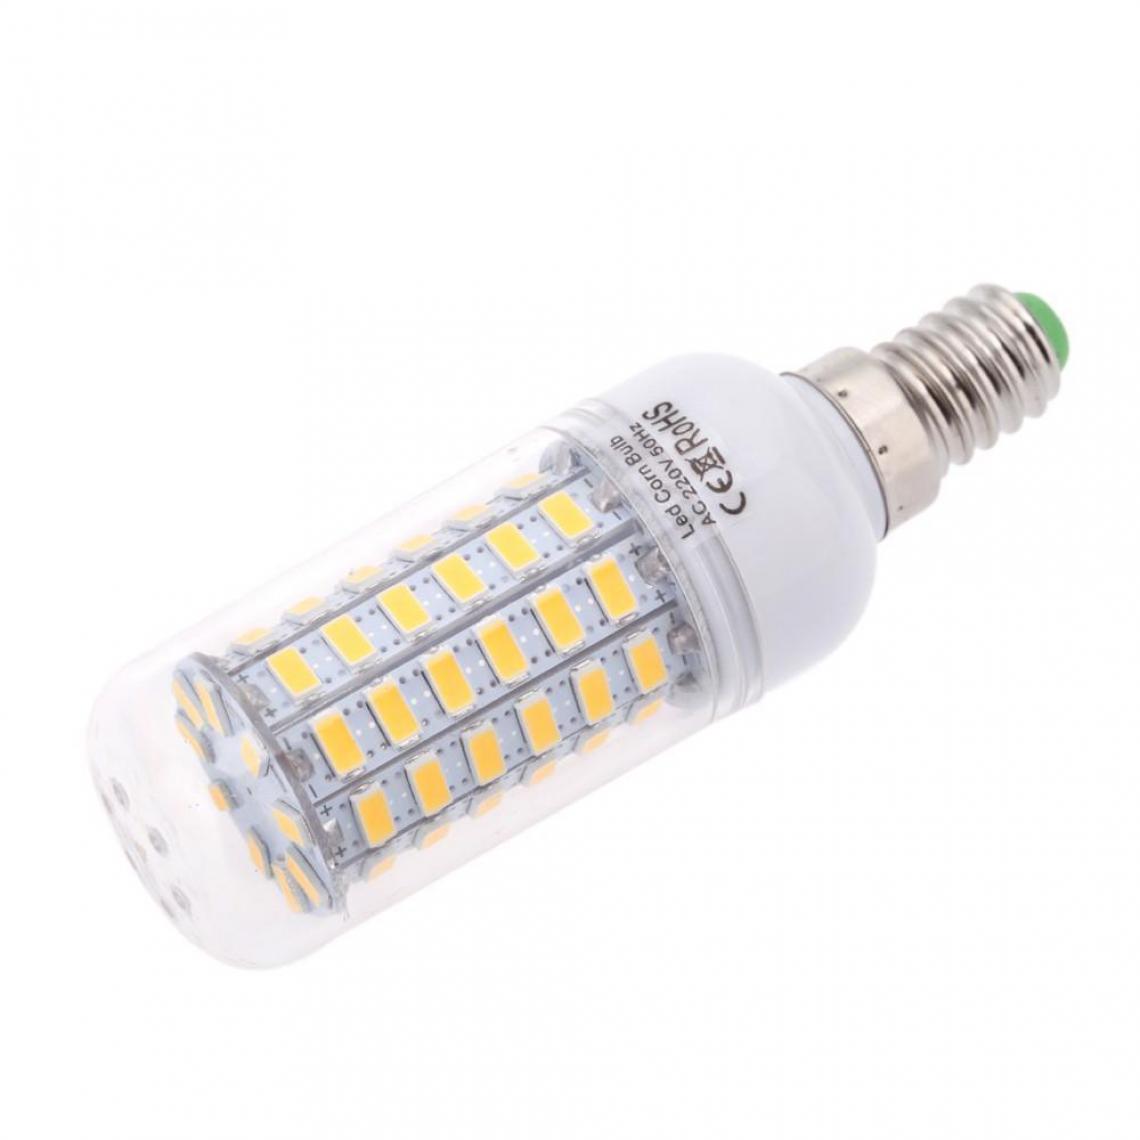 Justgreenbox - Ampoule de maïs à économie d'énergie 360 degrés 200-240V E14, Cold Blanc, 20W - Ampoules LED